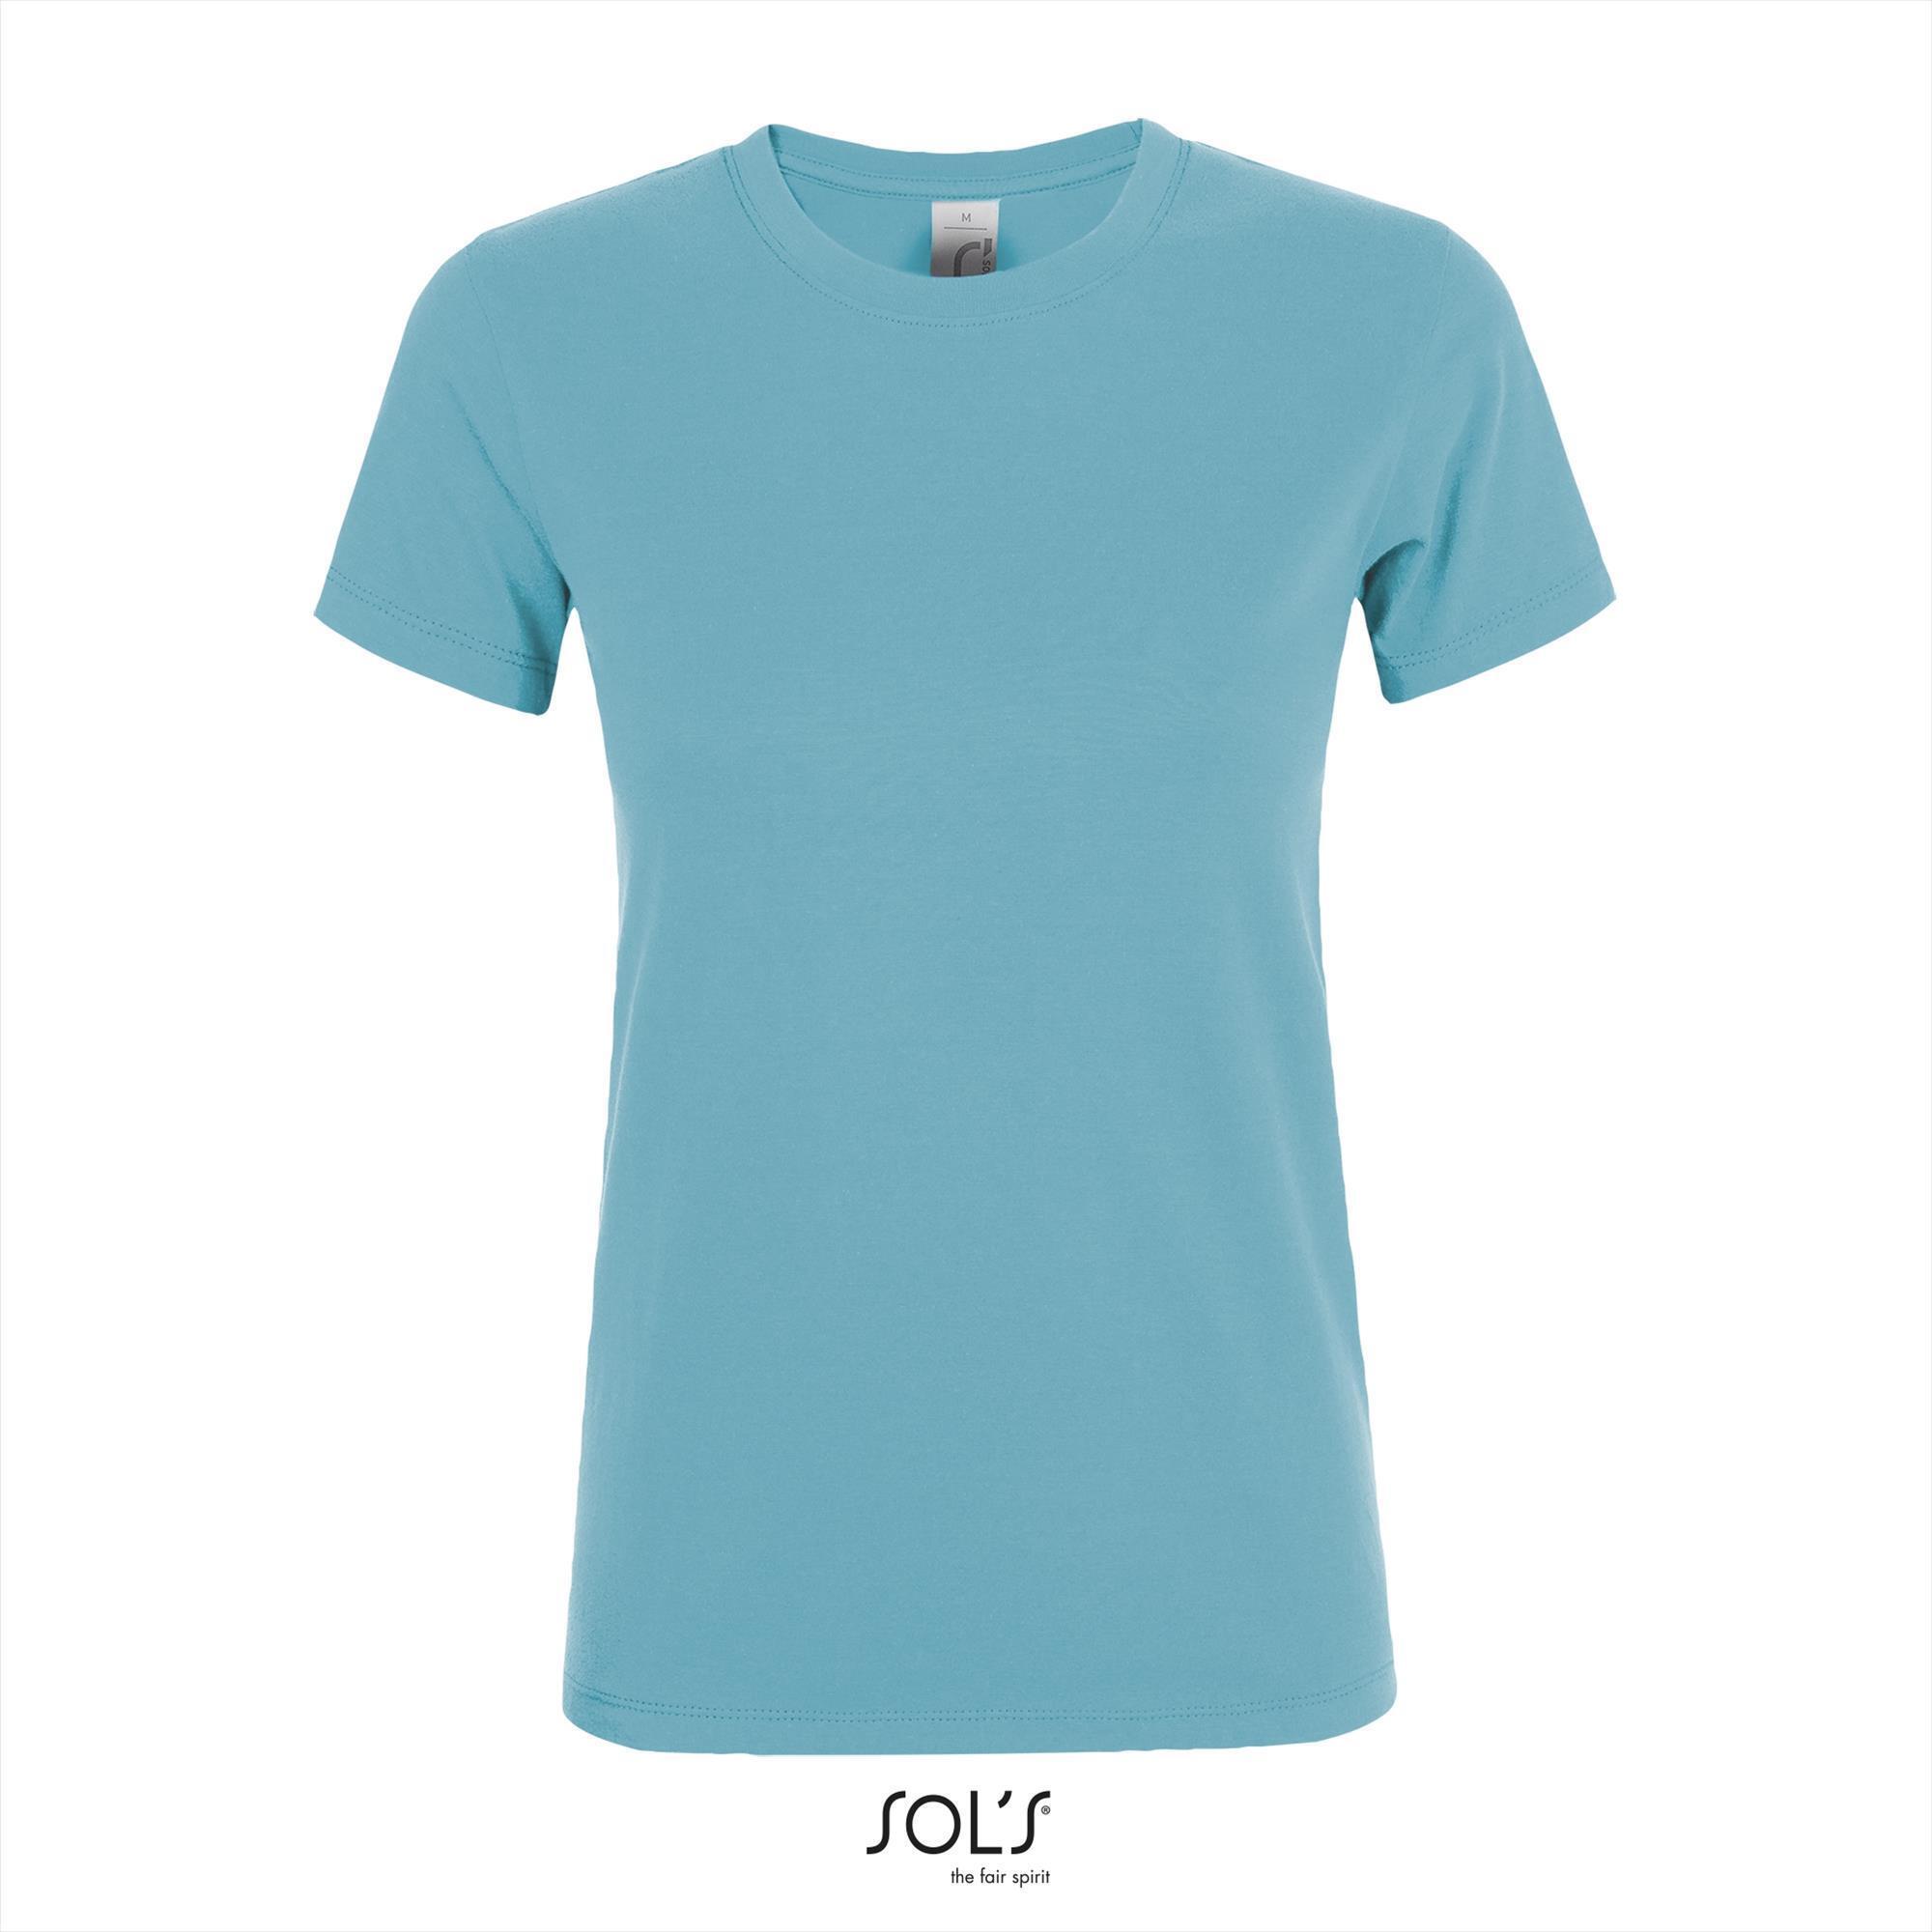 Dames T-shirt met een ronde hals mooie Atoll blauwe kleur